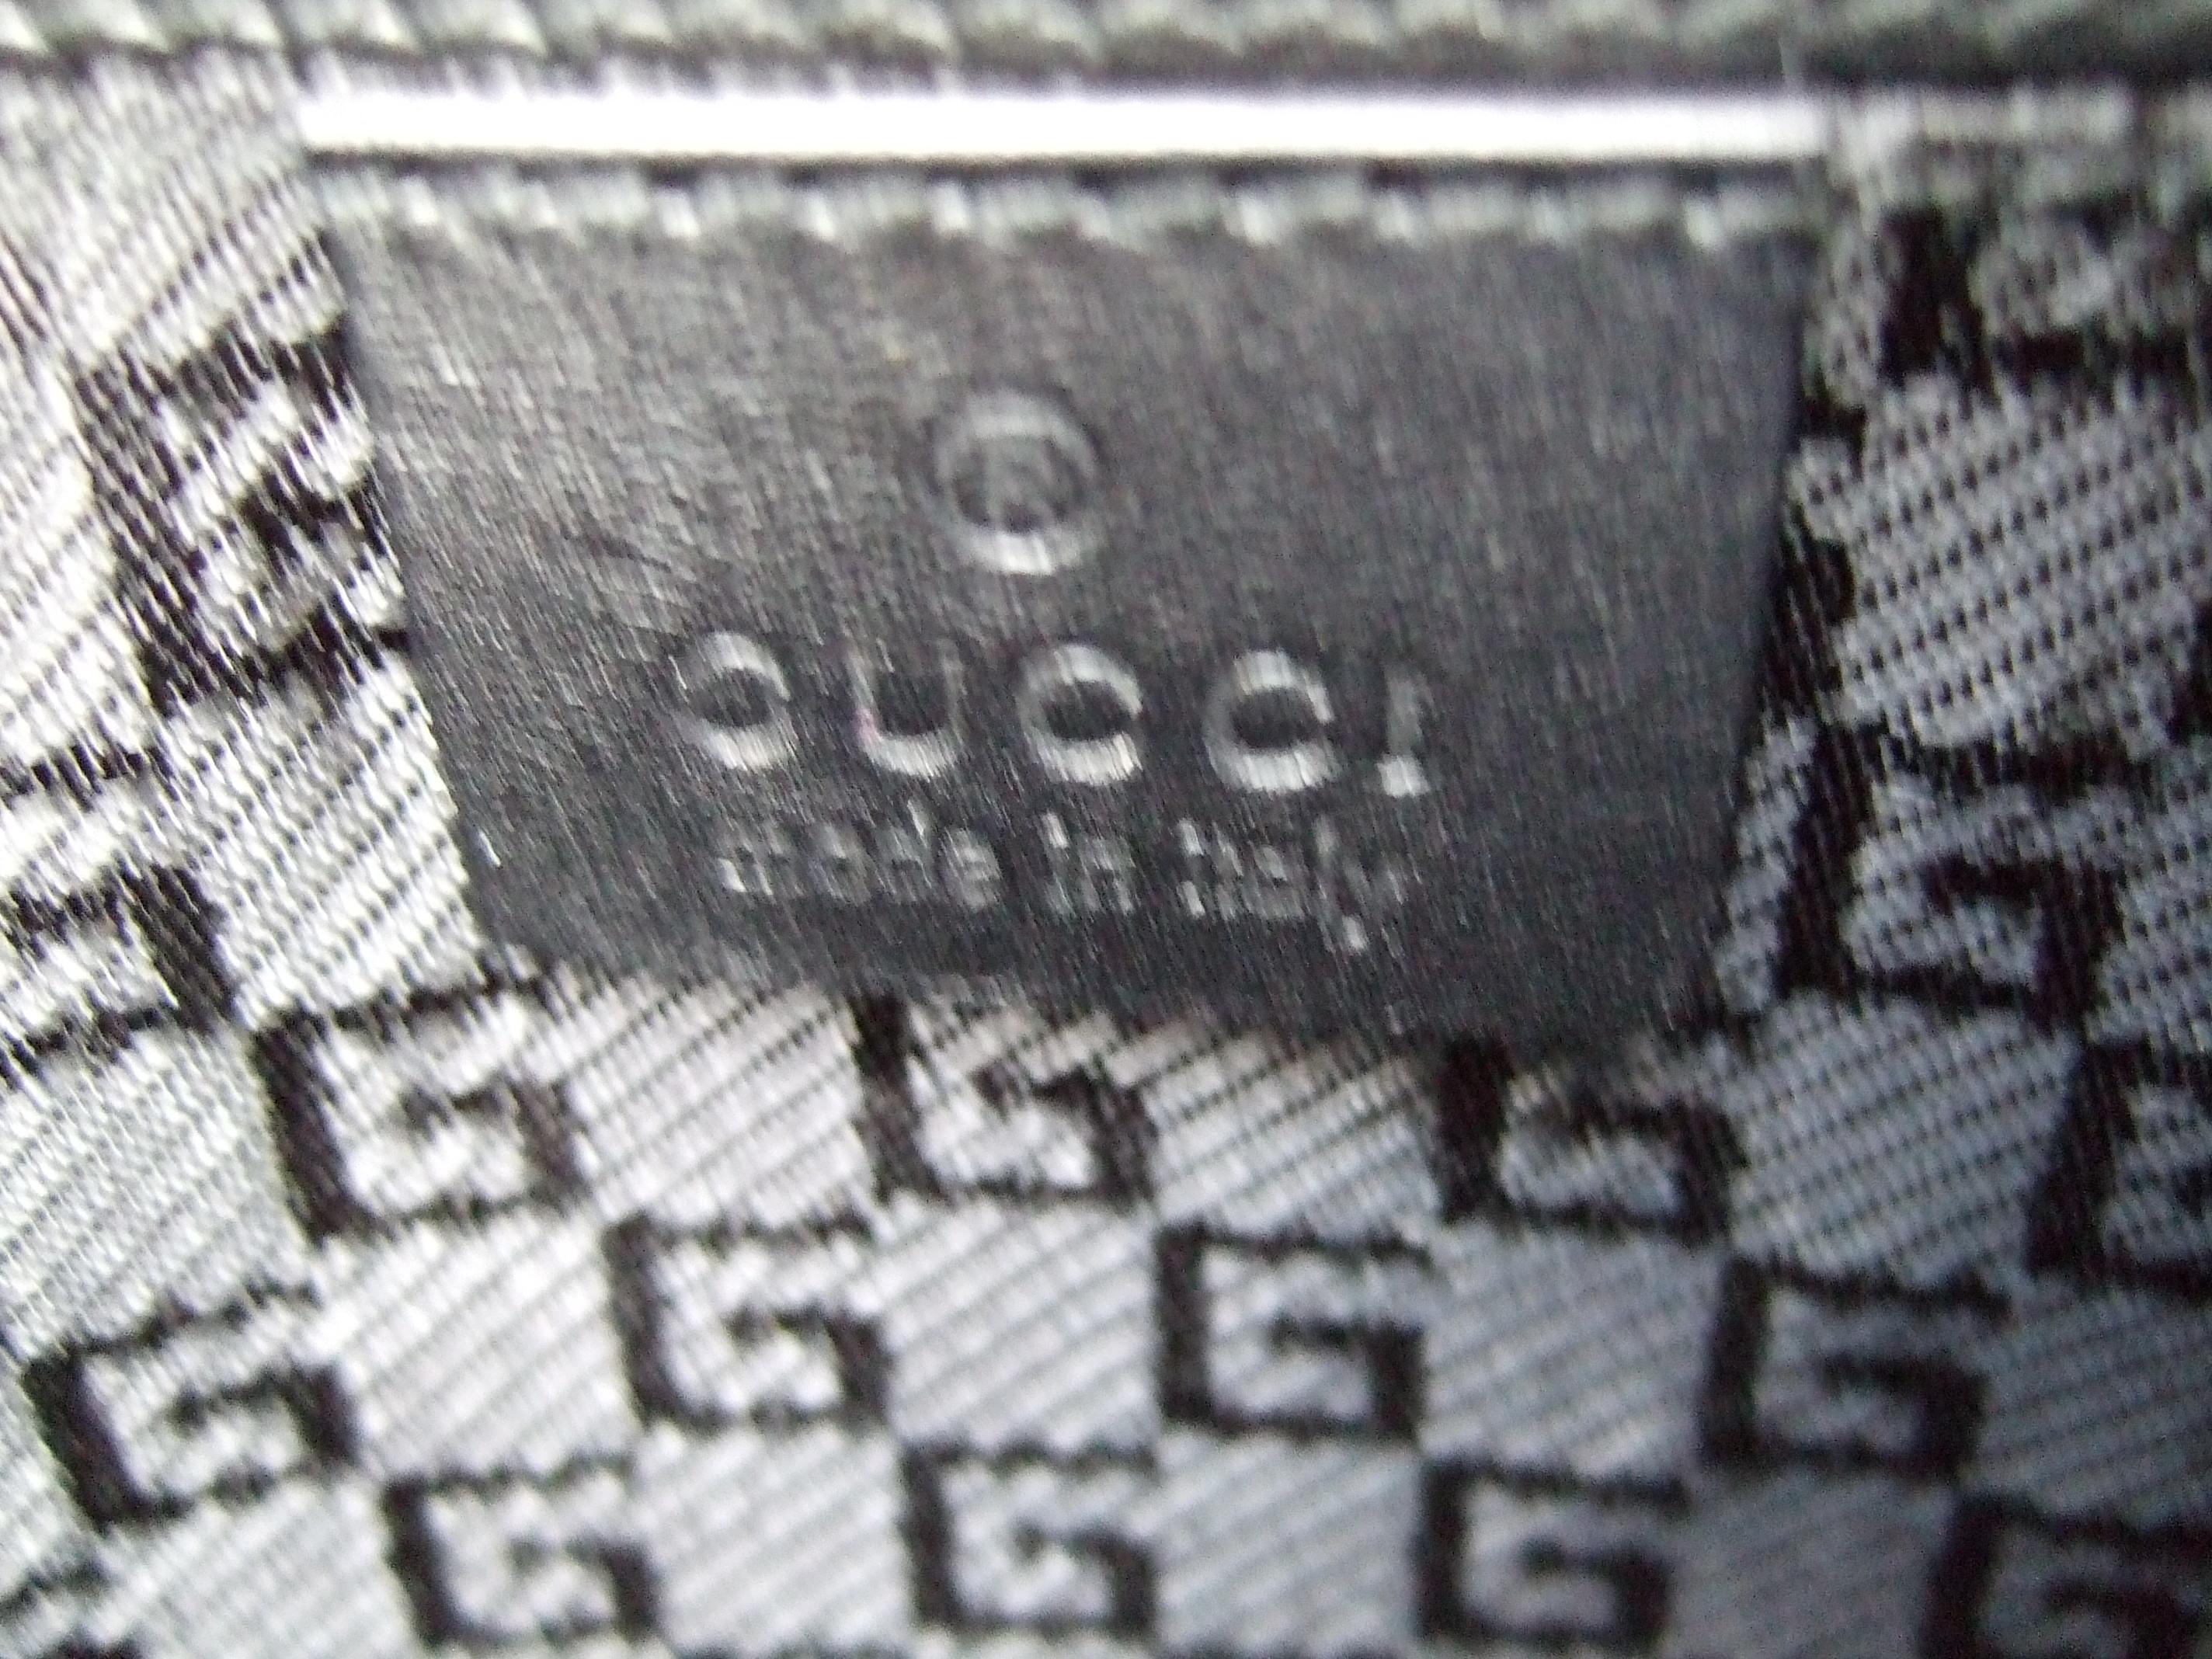 Gucci Italy Rare Black Suede Tiger Emblem Handbag Tom Ford Era c 2000 11